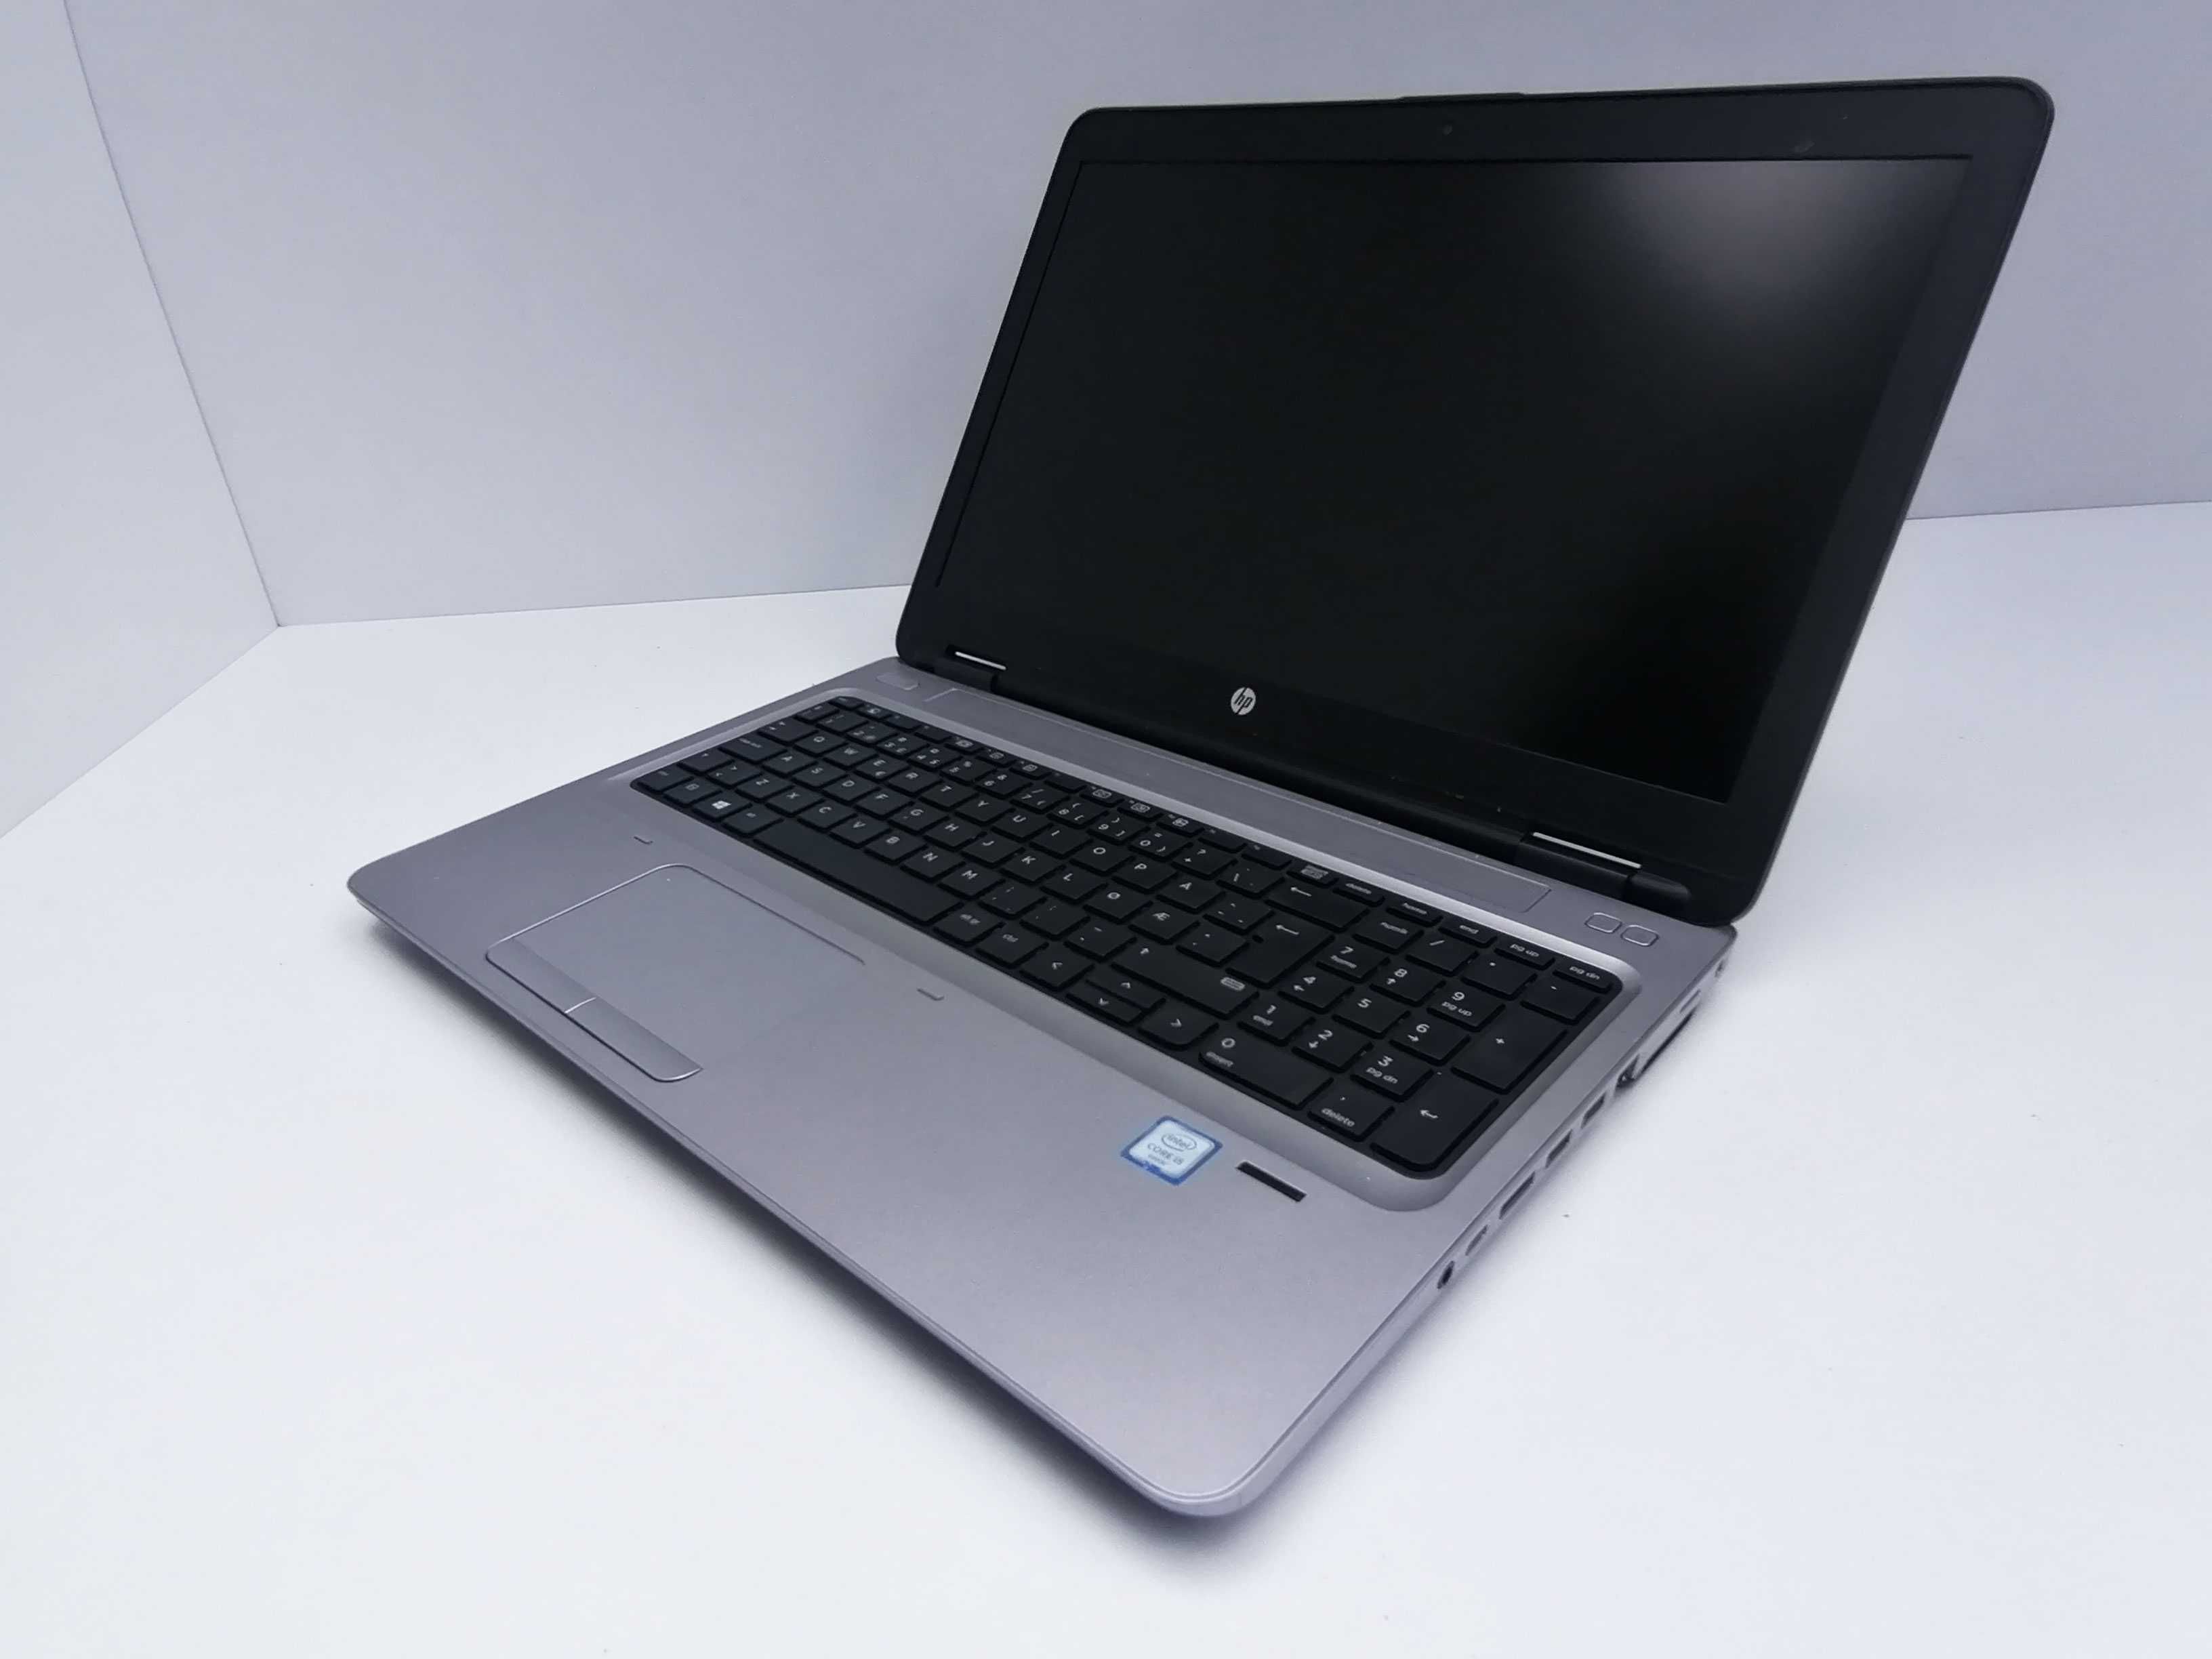 HP ProBook FHD i5-6200U 8 GB RAM 256 GB SSD